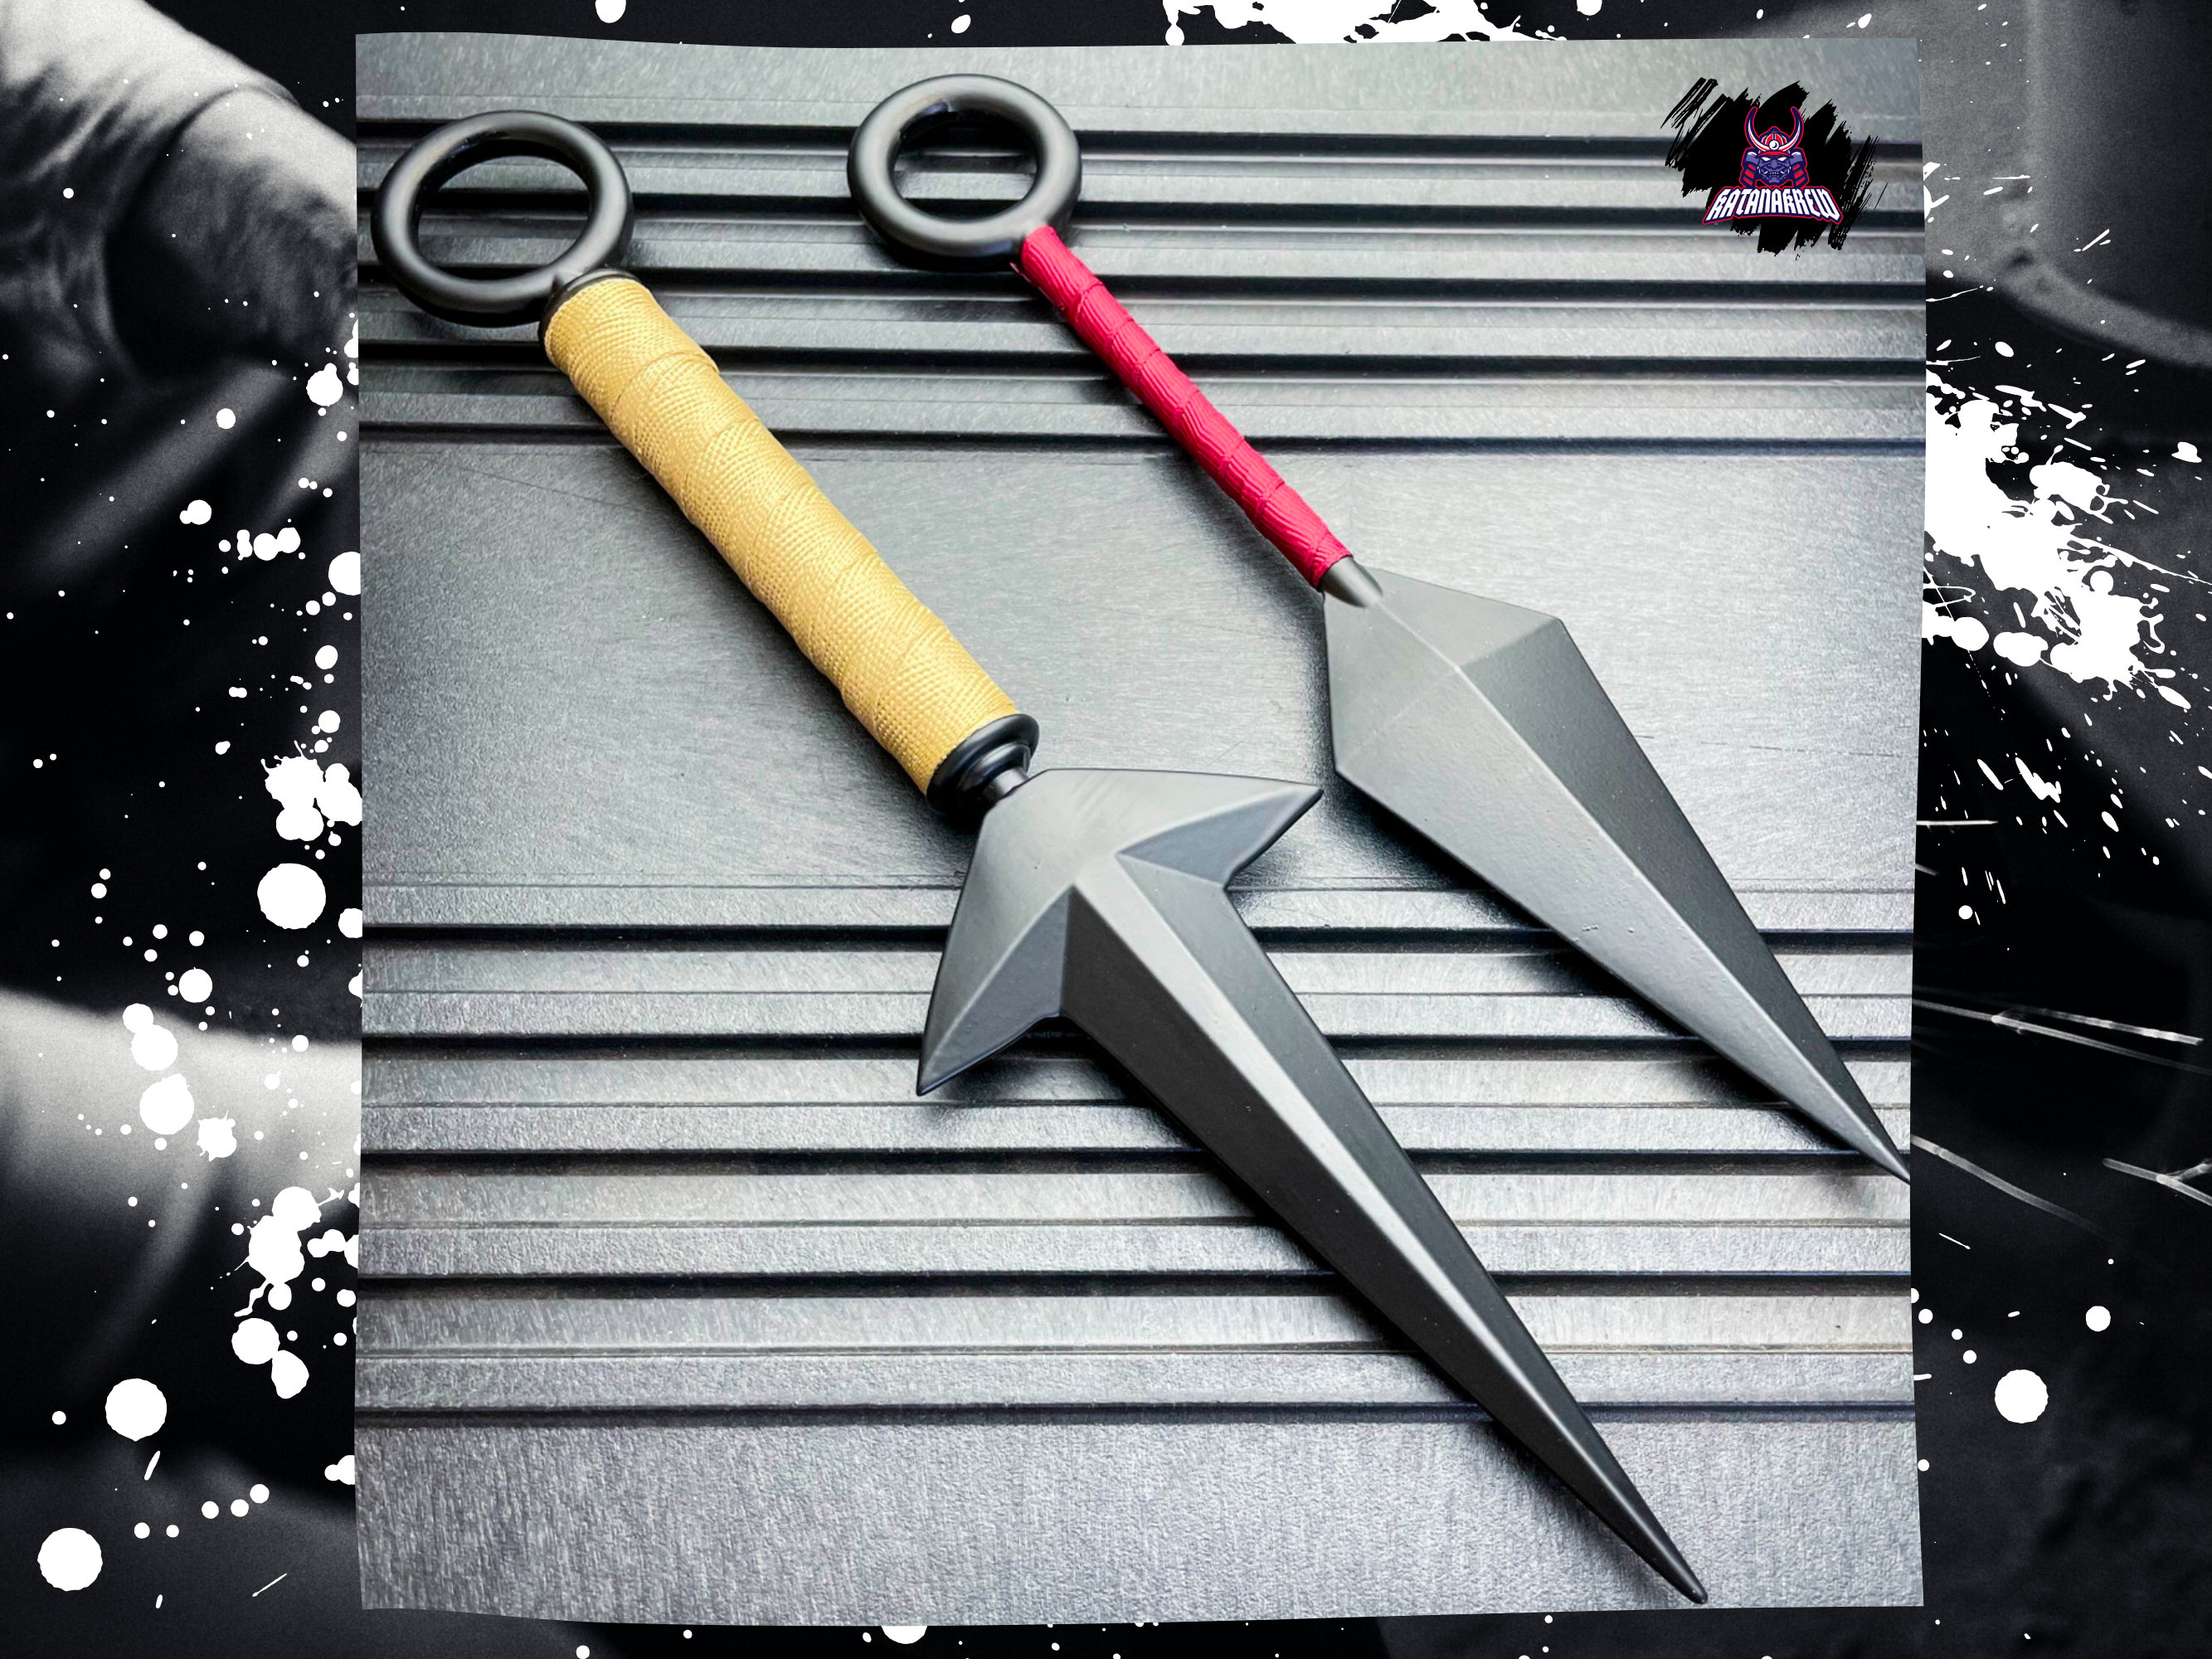 24PC Ninja Tactical Hunting MIXED Knives Ninjutsu Kunai Throwing Knife  Blade Set